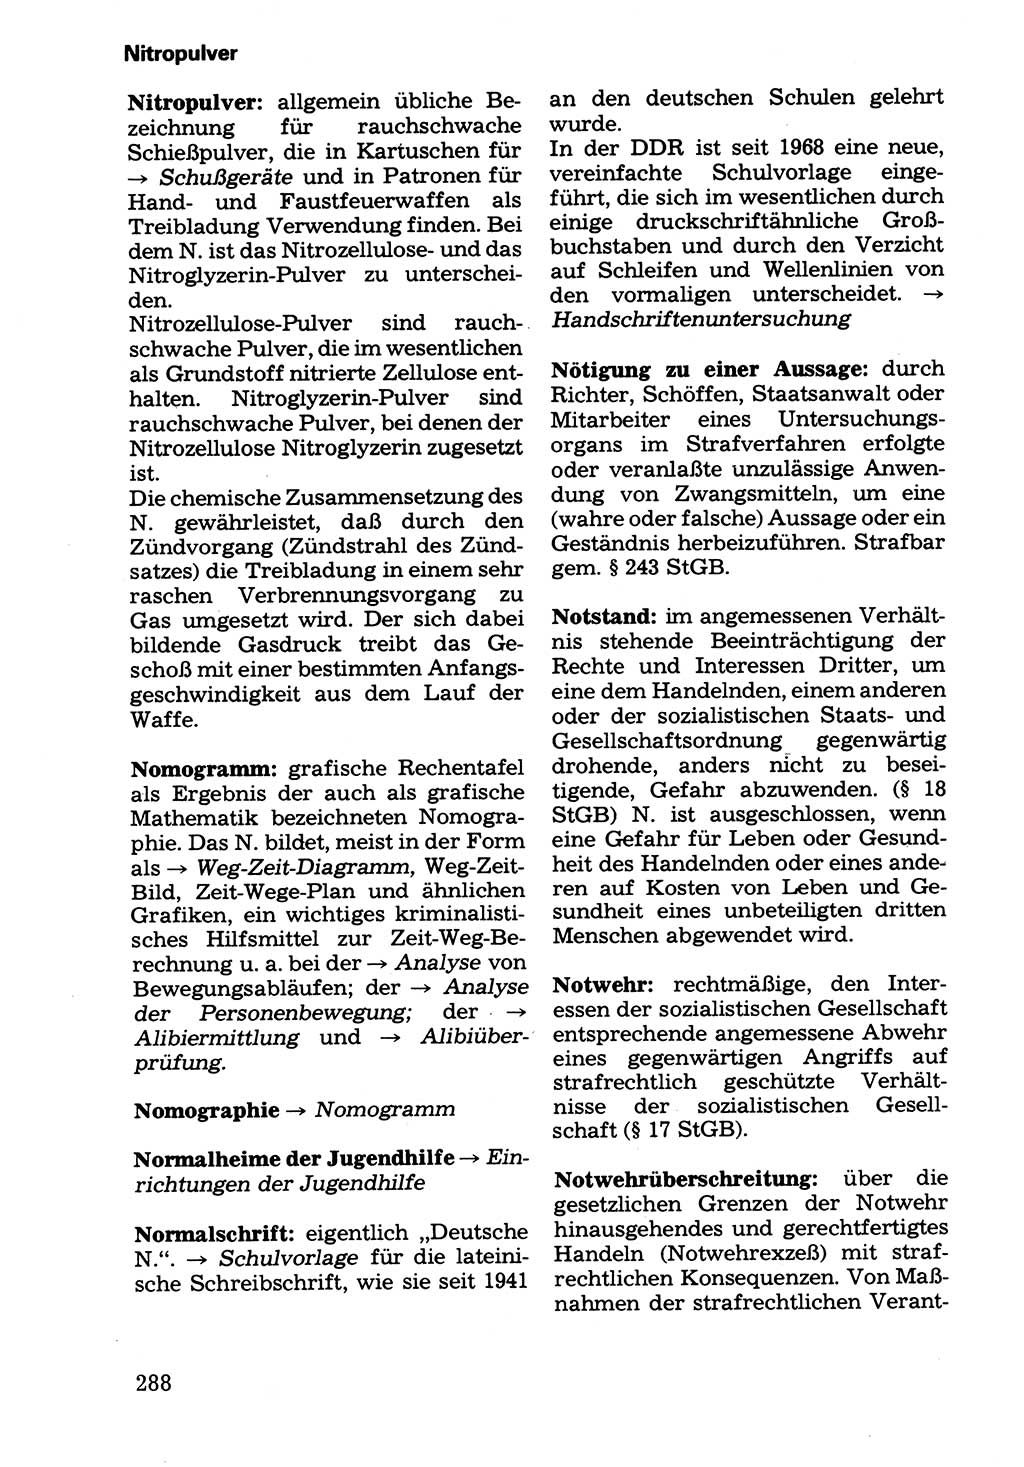 Wörterbuch der sozialistischen Kriminalistik [Deutsche Demokratische Republik (DDR)] 1981, Seite 288 (Wb. soz. Krim. DDR 1981, S. 288)